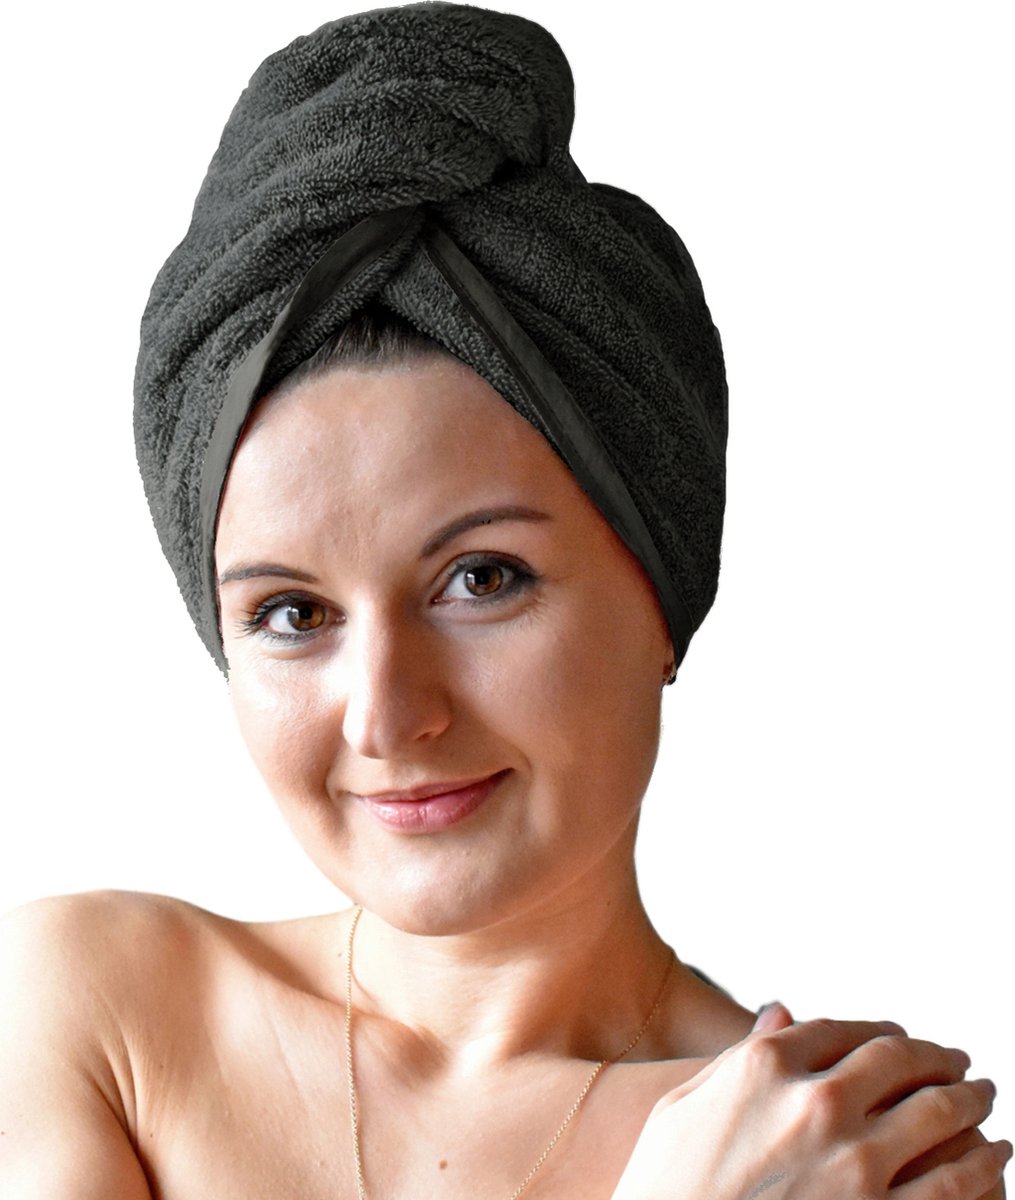 HOMELEVEL Badstof haartulband met knoop voor volwassenen gemaakt van 100% katoen, absorberend, stabiele grip - Aantal 1 - Donkergrijs